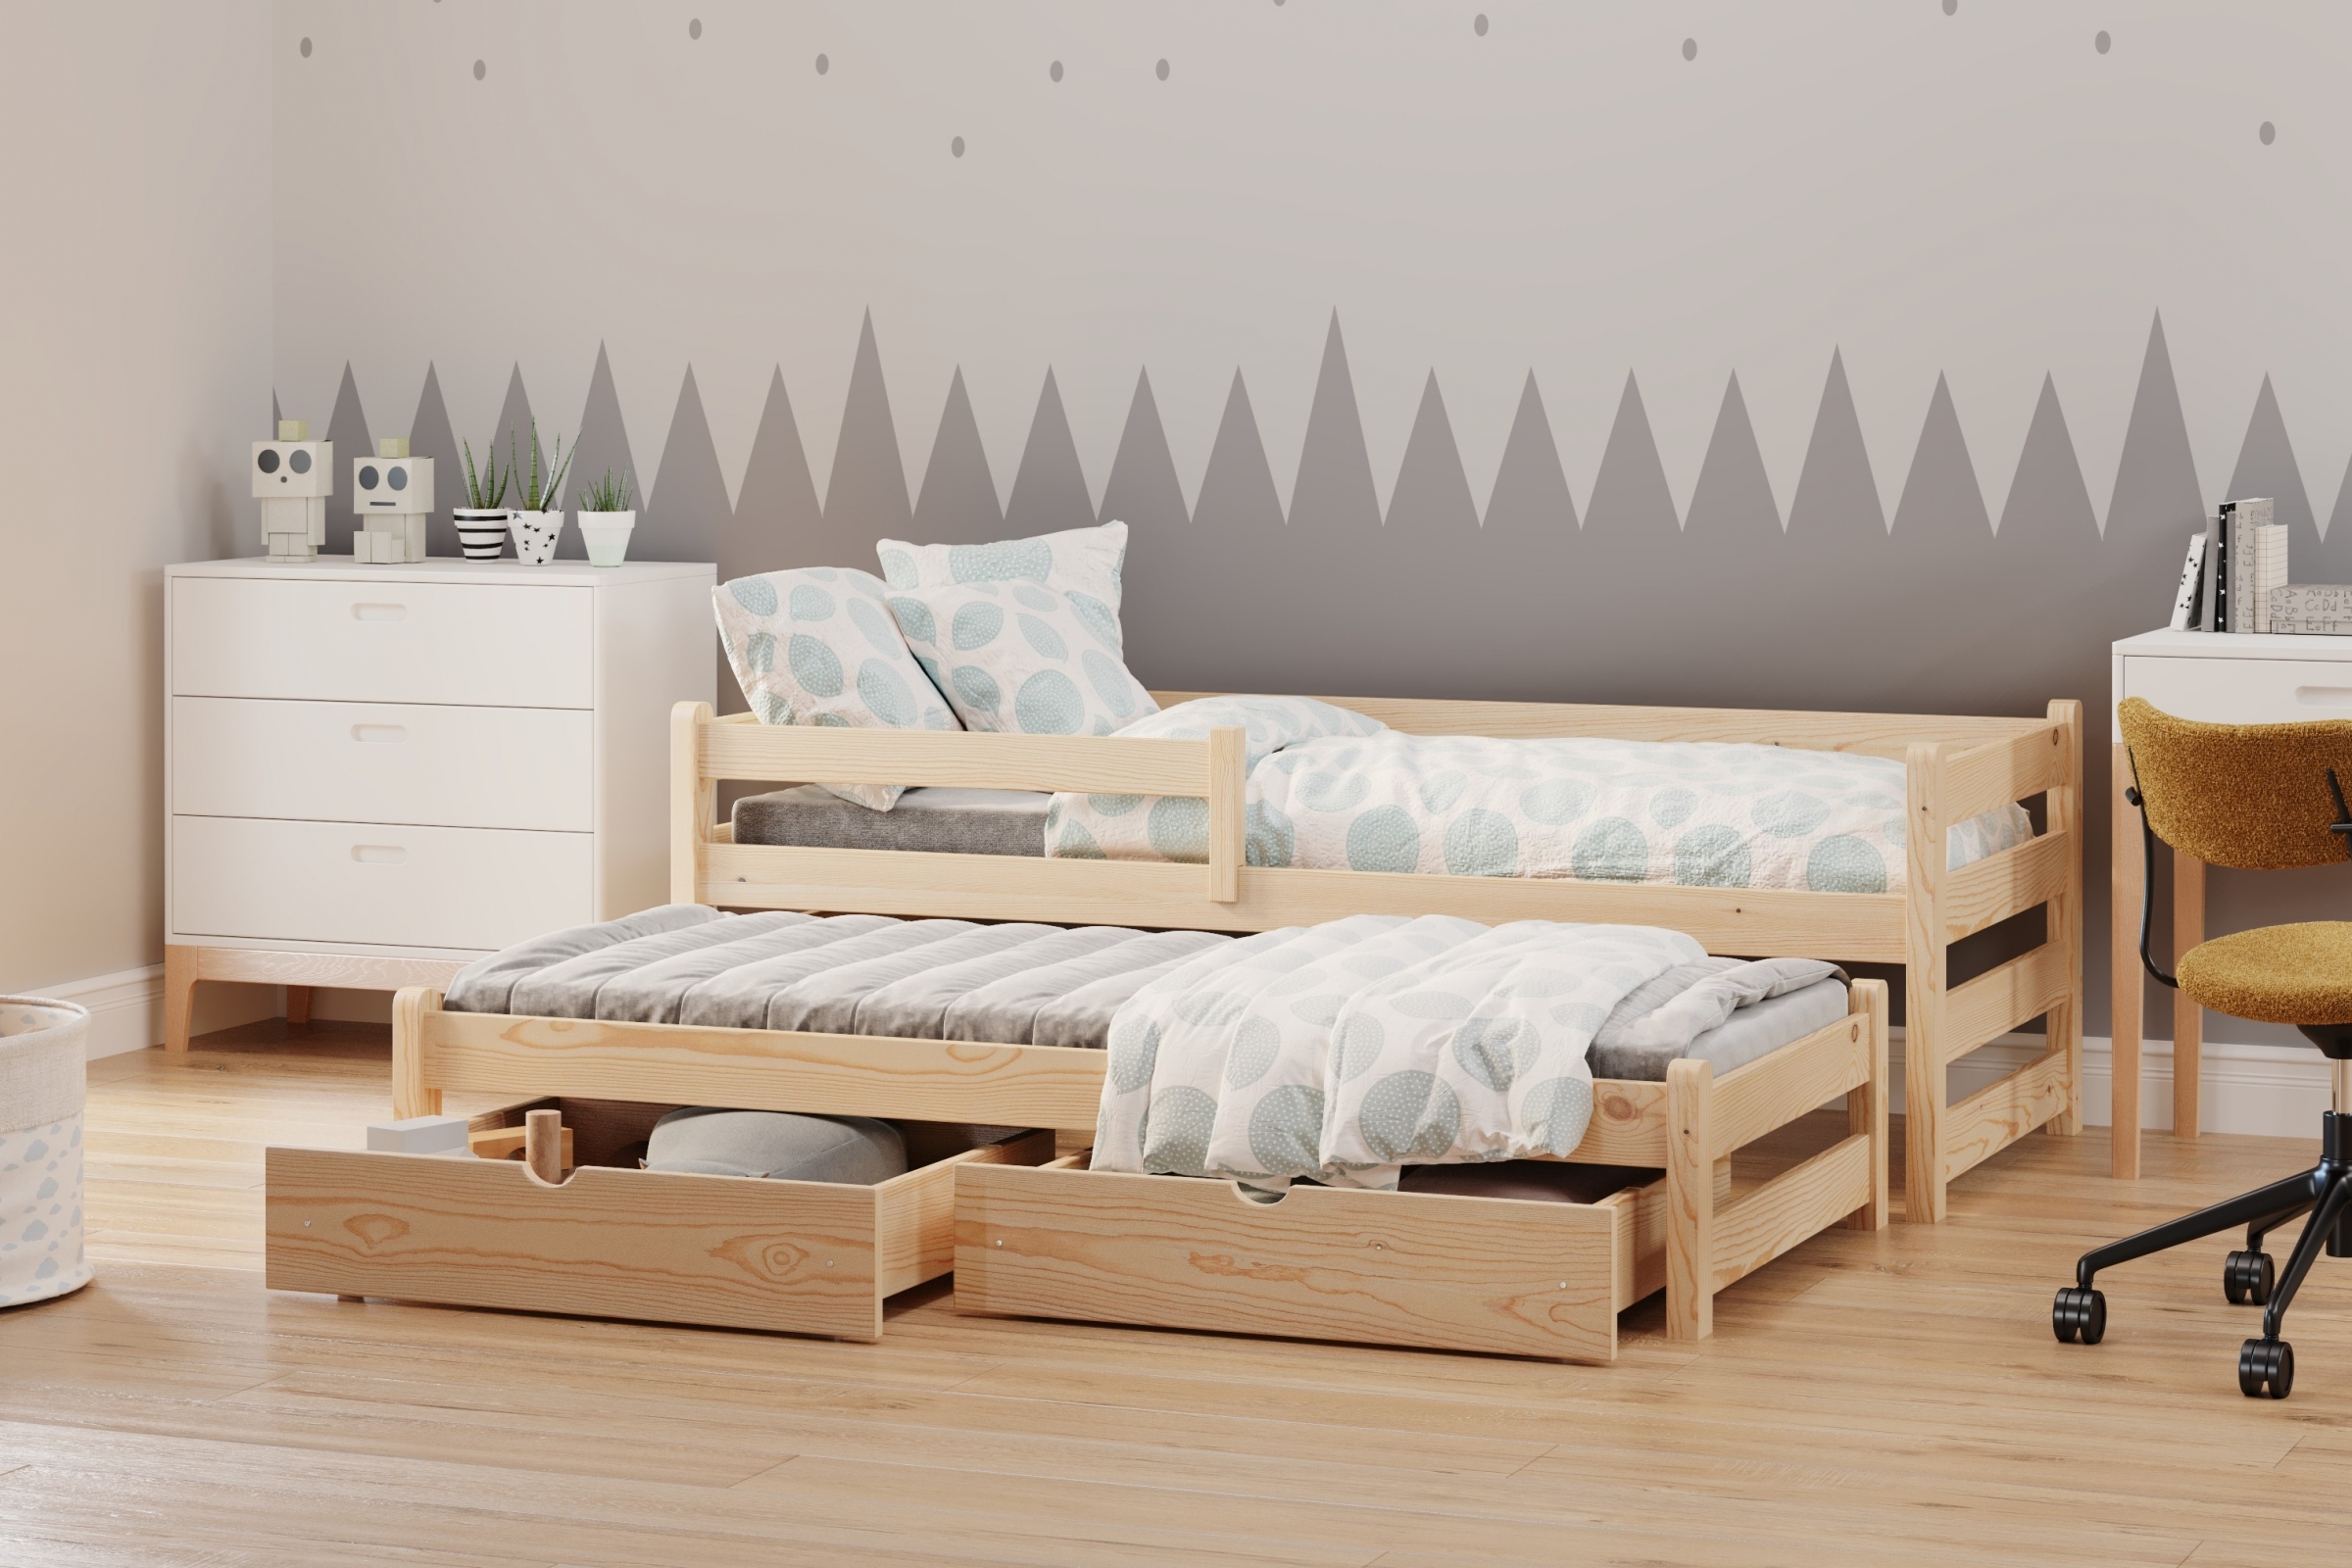 Detská posteľ prízemná s výsuvným lôžkom Alis DPV 001 - Borovica, 90x190 Posteľ prízemná s výsuvným lôžkom Alis - Farba Borovica - vizualizácia